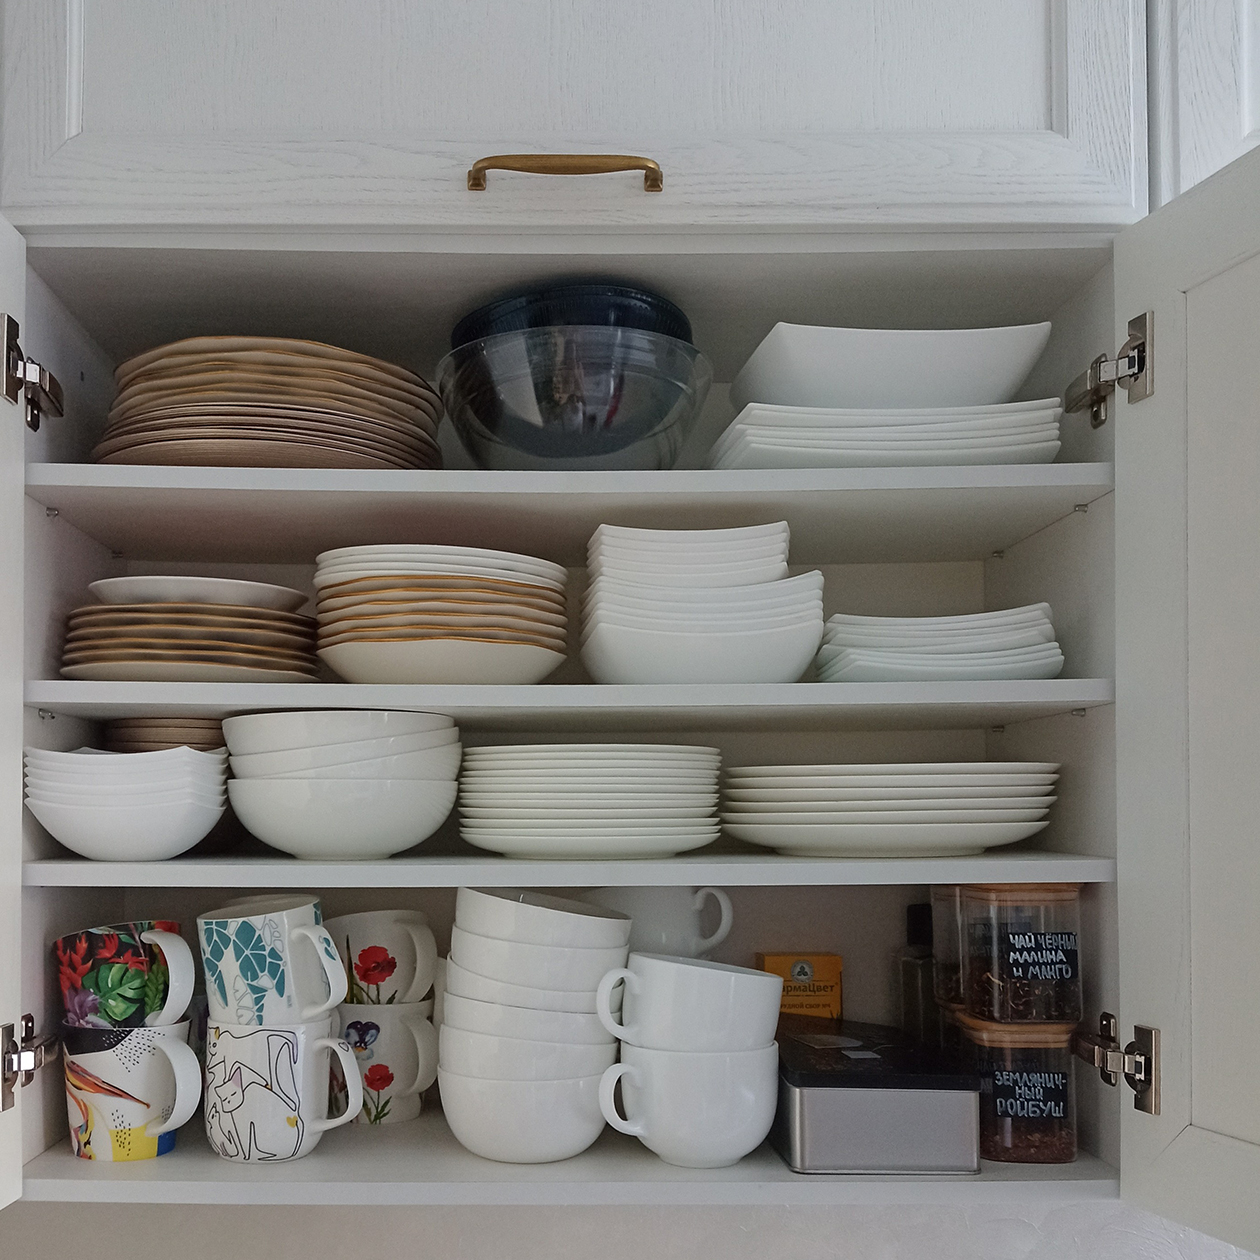 Один из шкафчиков на домашней кухне, в котором я храню повседневную посуду, — здесь около 130 предметов